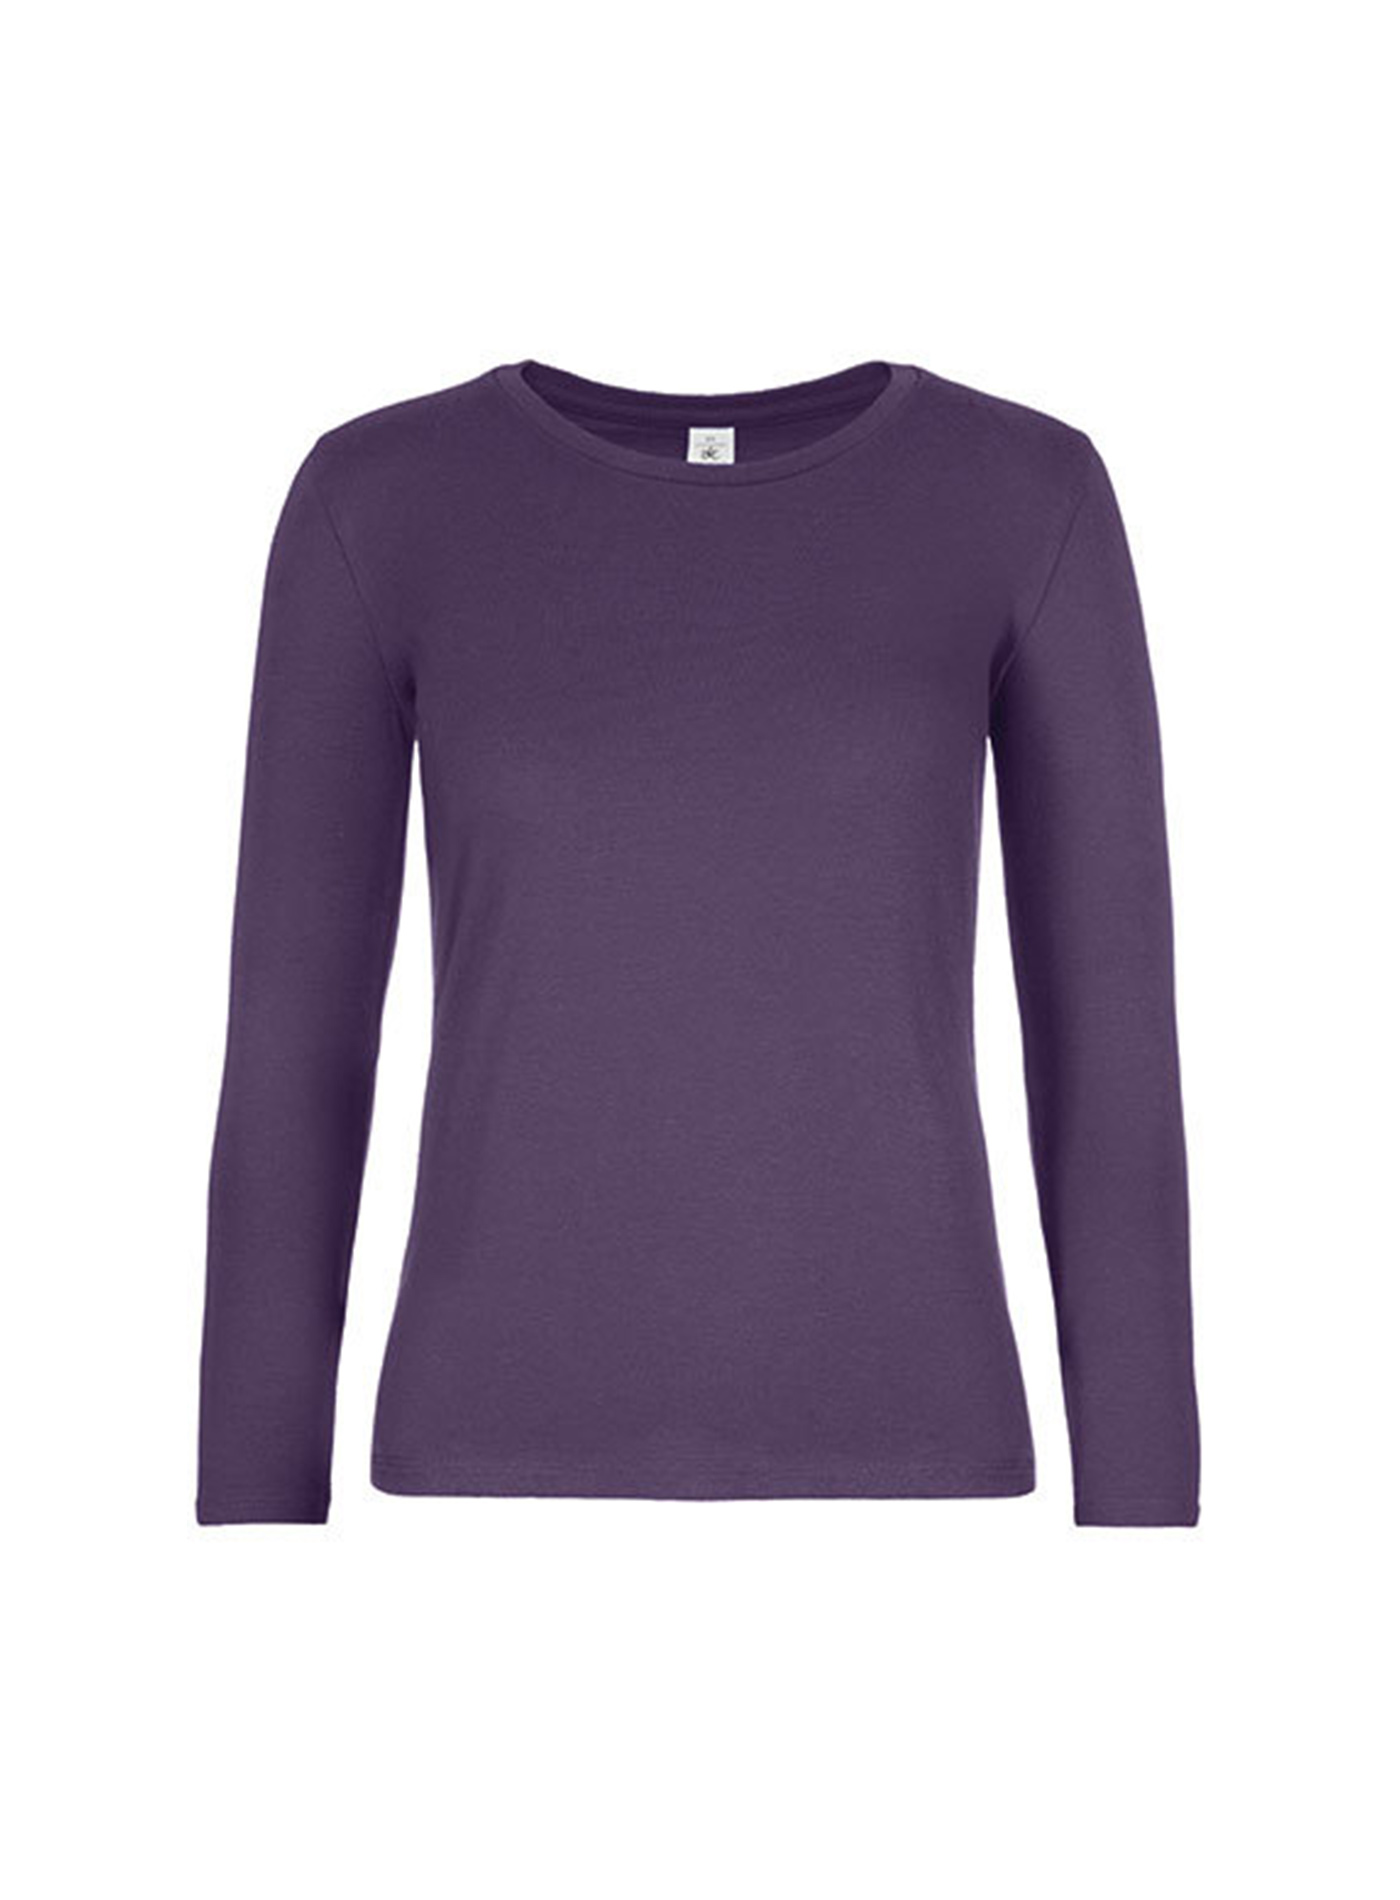 Dámské tričko s dlouhým rukávem B&C Collection - Tmavě fialová M